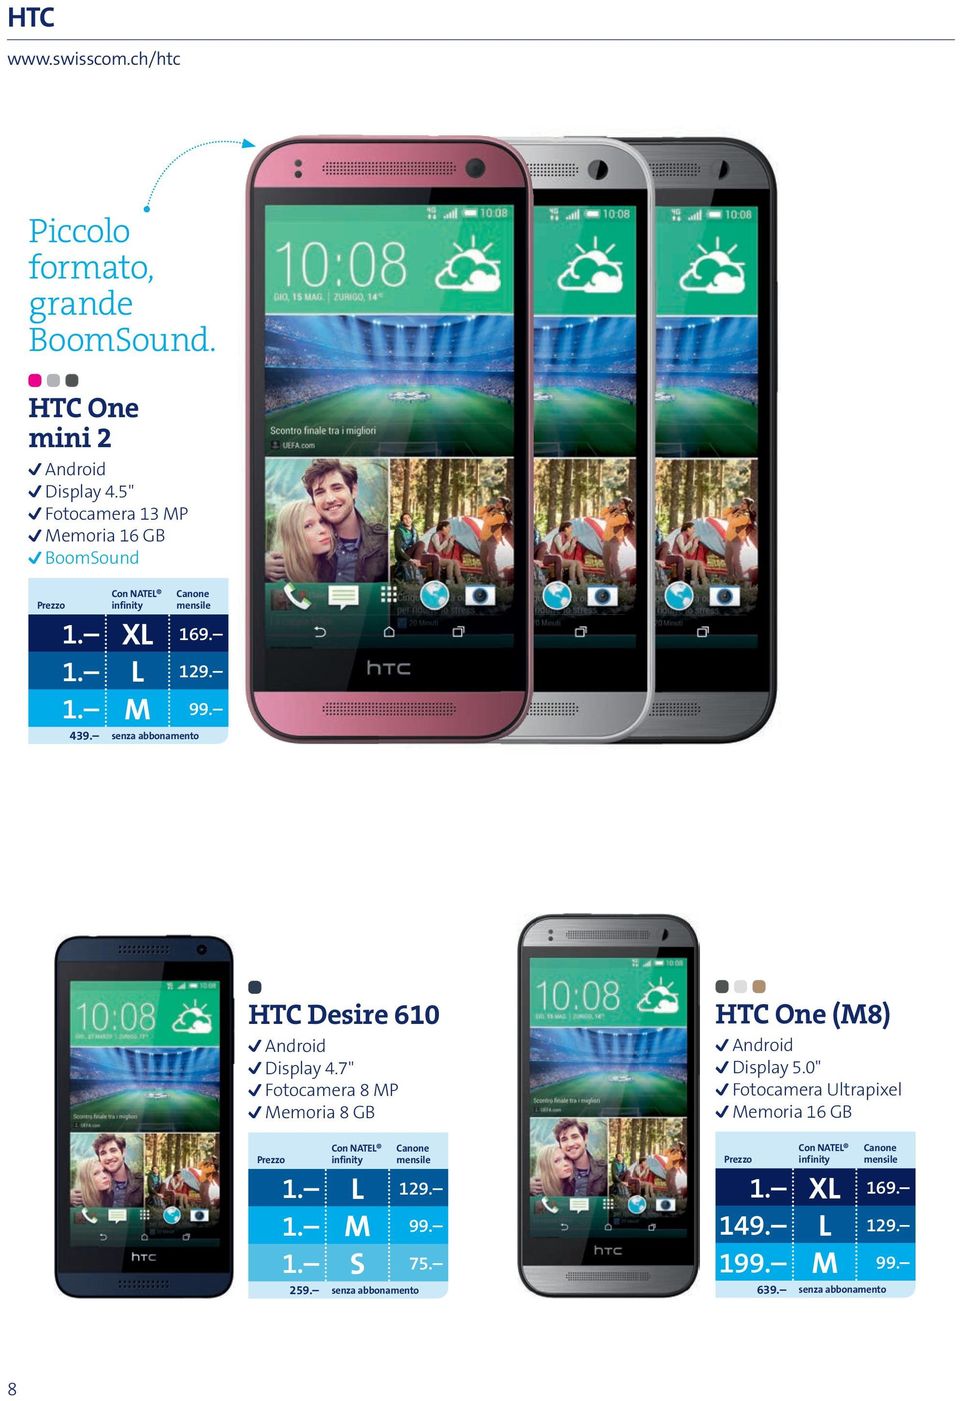 senza abbonamento HTC Desire 610 Android Display 4.7" Fotocamera 8 MP Memoria 8 GB 1. L 129. 1. M 99. 1. S 75.